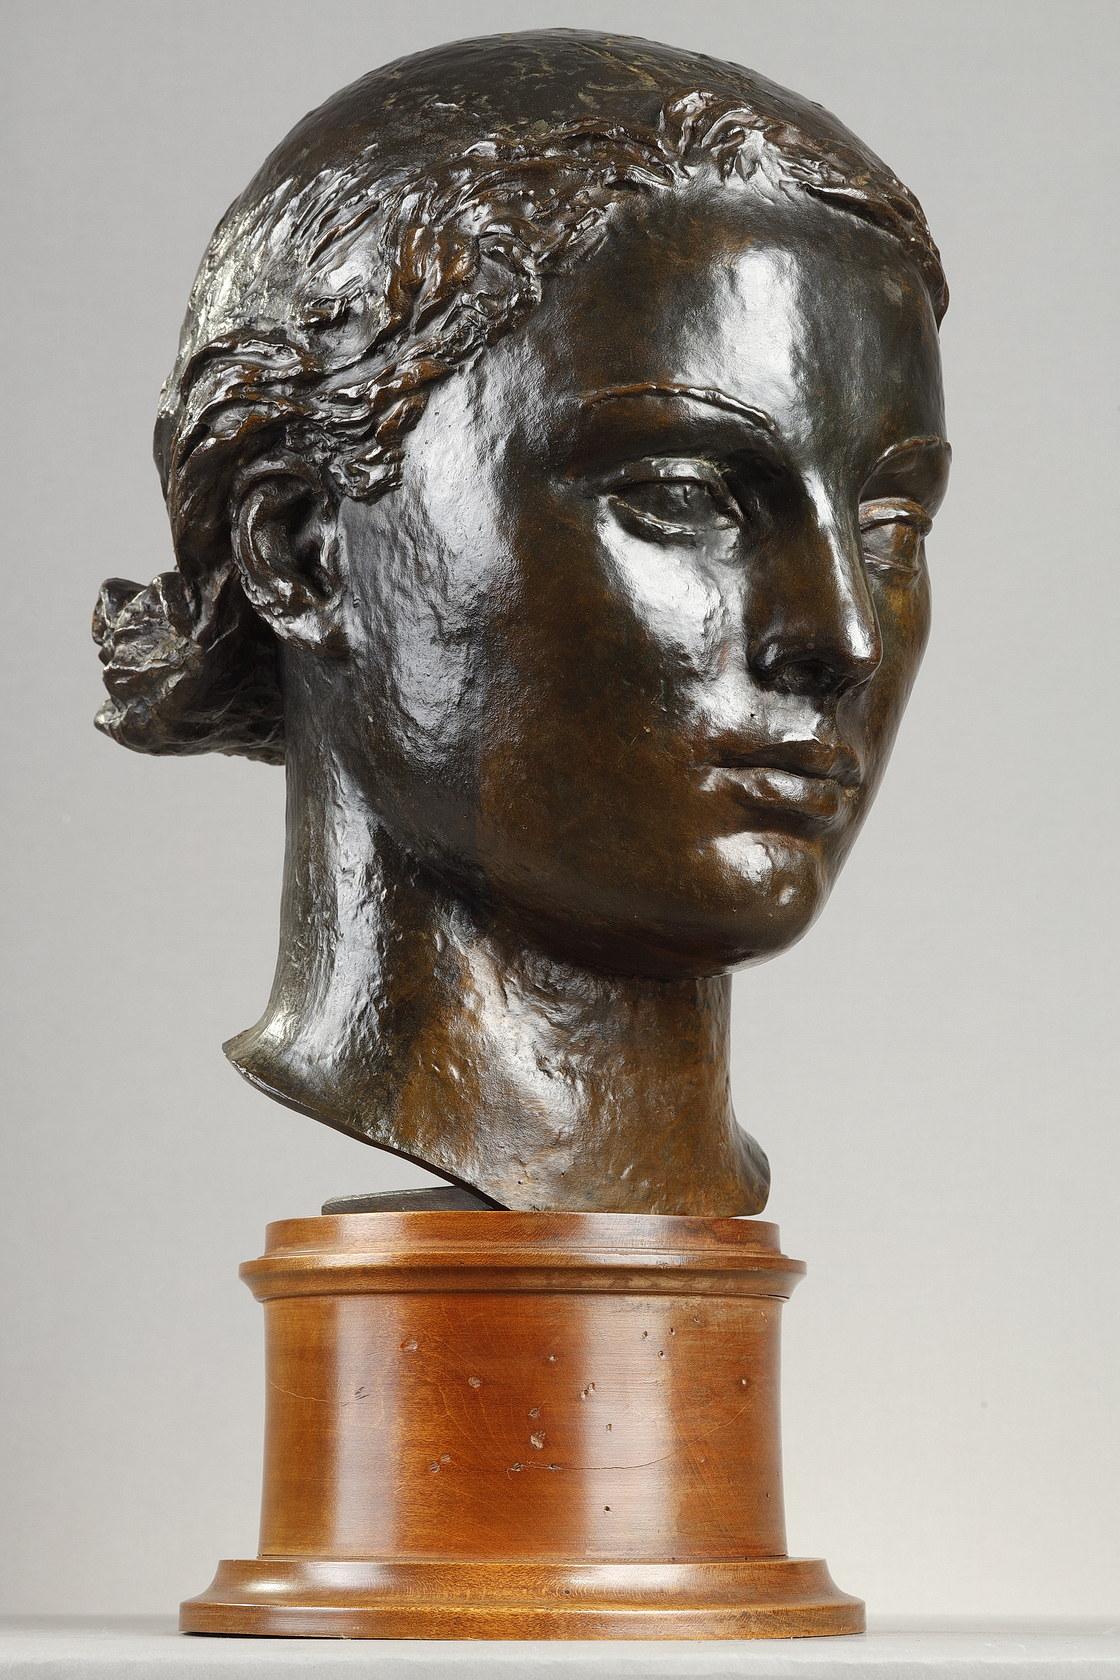 Kopf eines Mädchens
von Paul BELMONDO (1898-1982)

Bronze mit einer nuancierten dunkelbraunen Patina
Signiert 